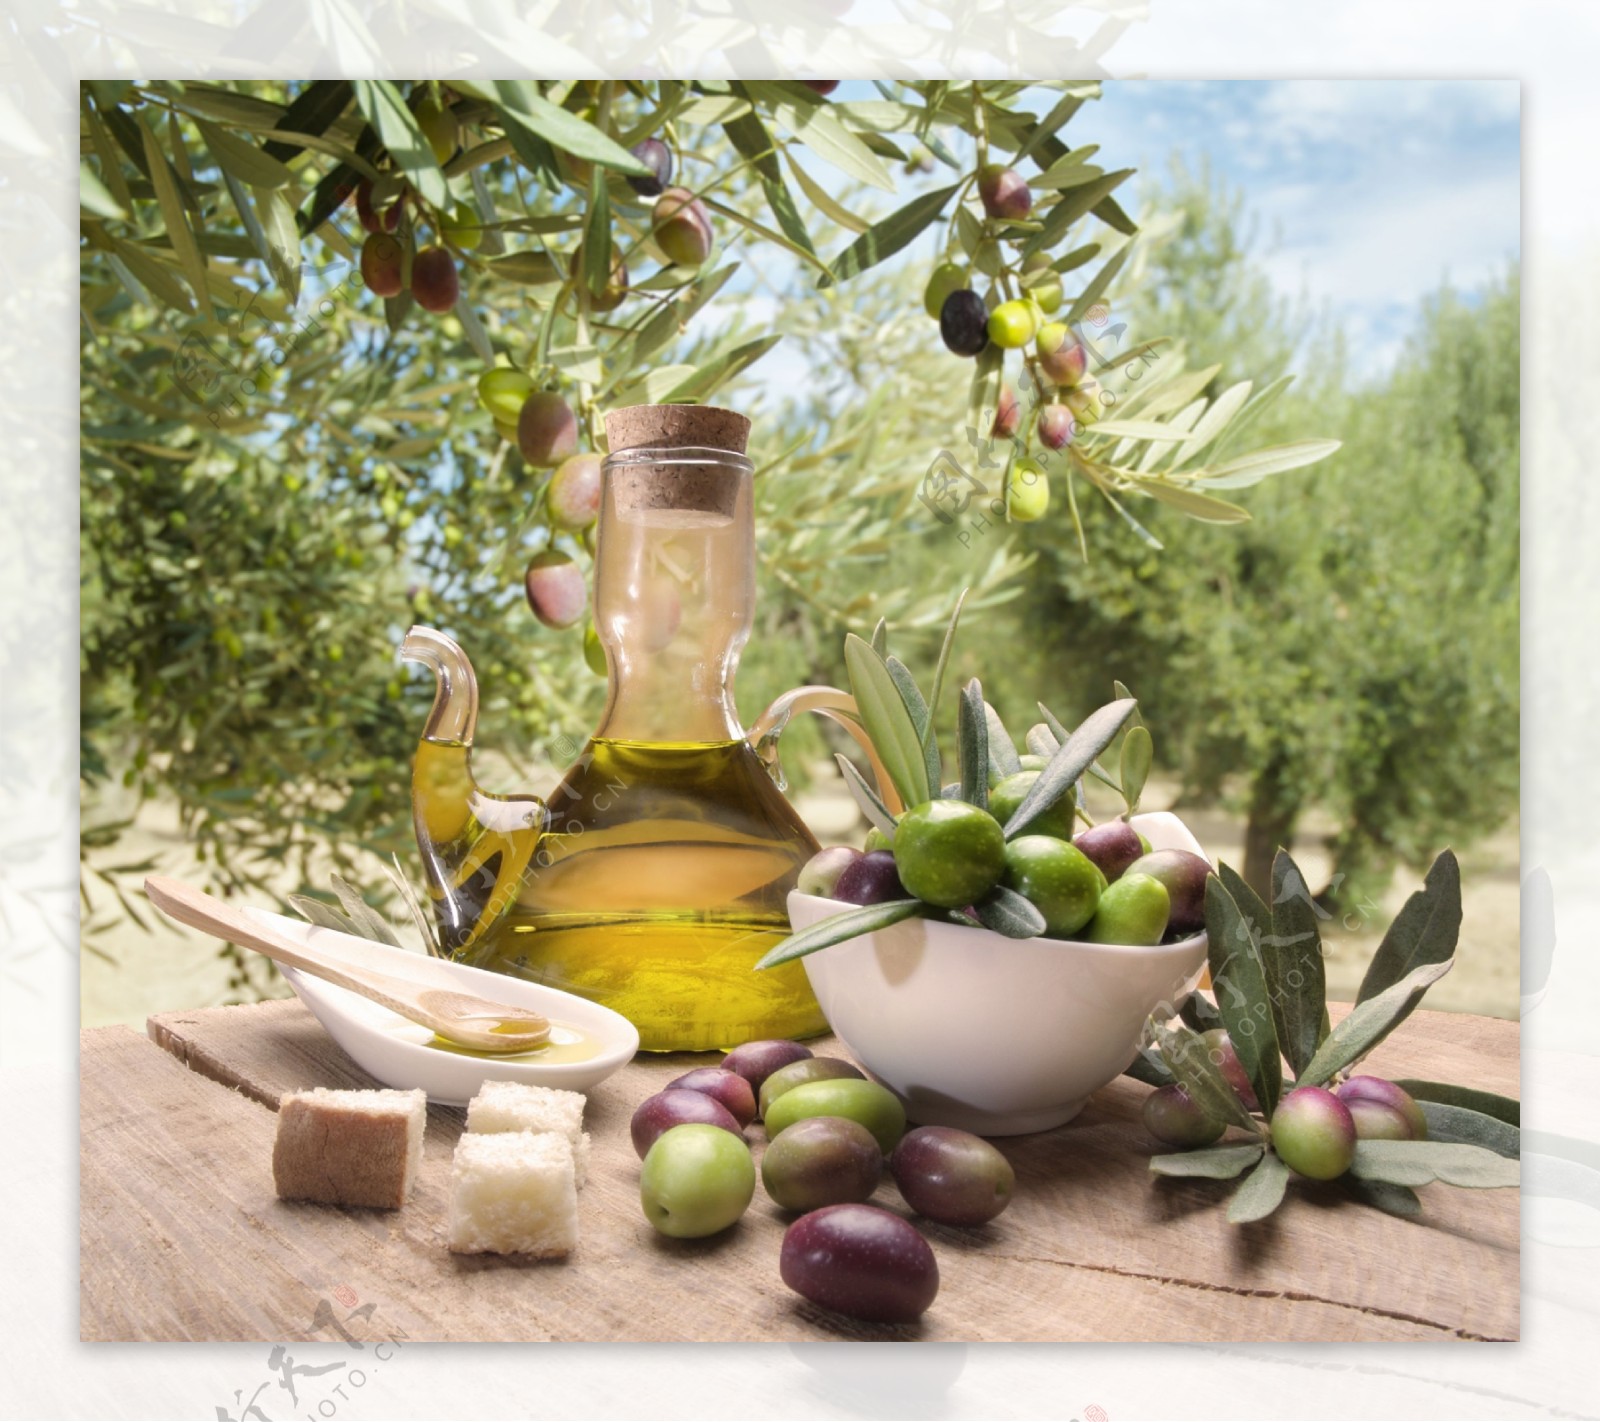 橄榄油与橄榄图片